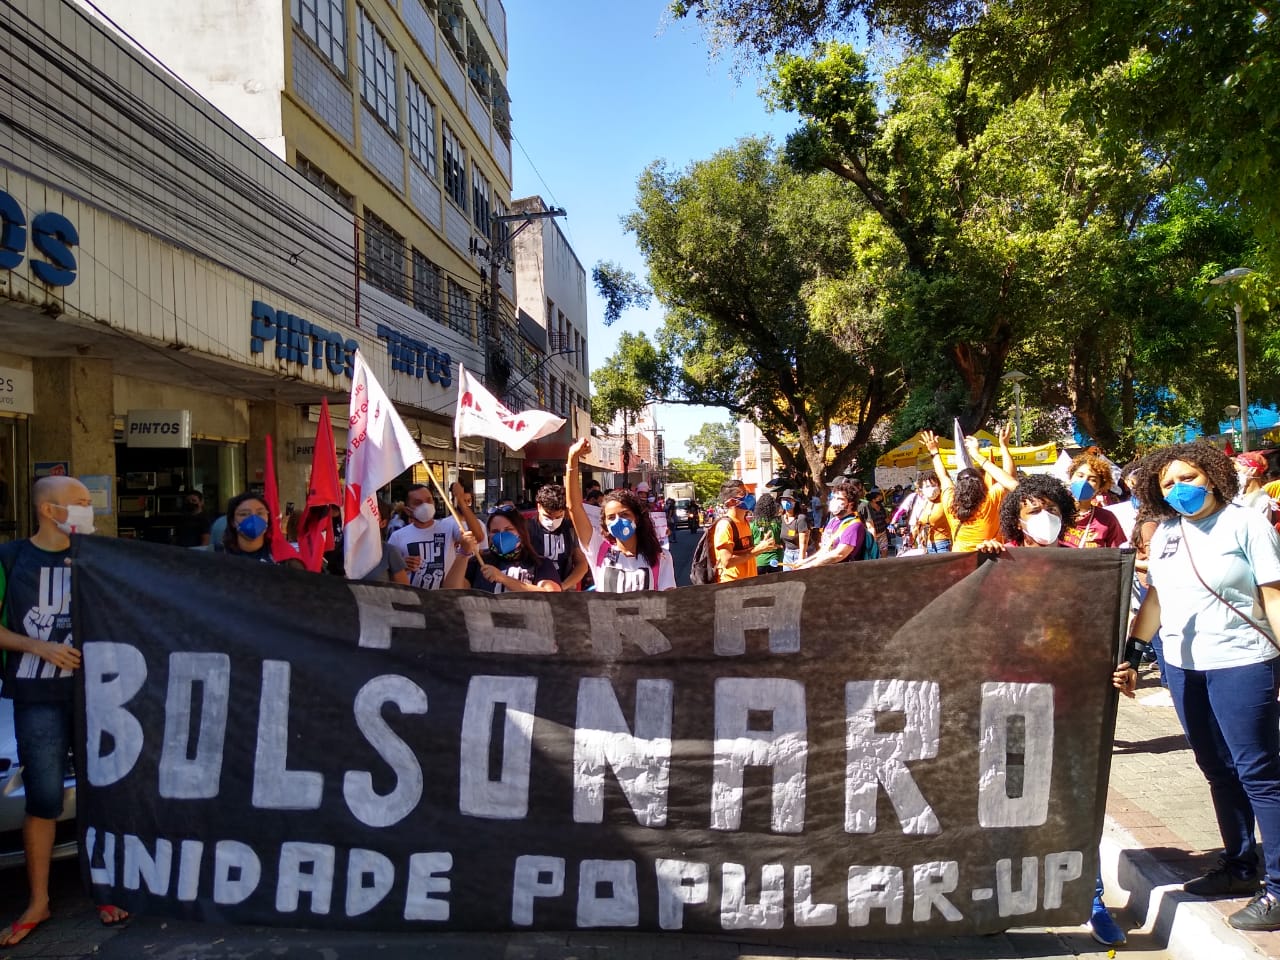 Protesto contra Bolsonaro realizado em Teresina